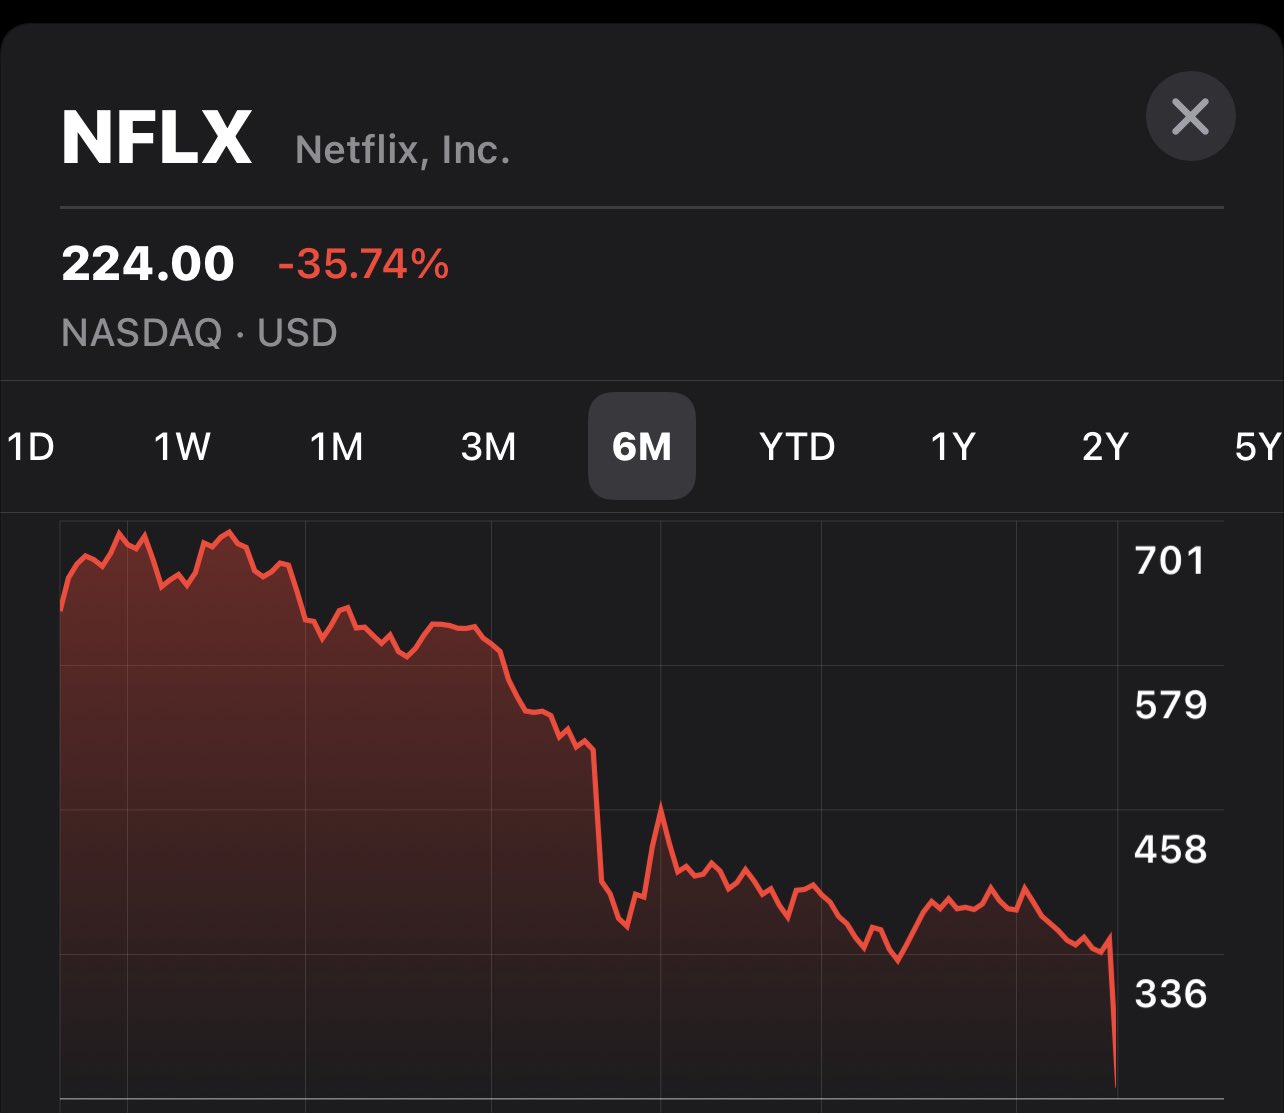 Darum sind die Netflix-Aktien im Keller!